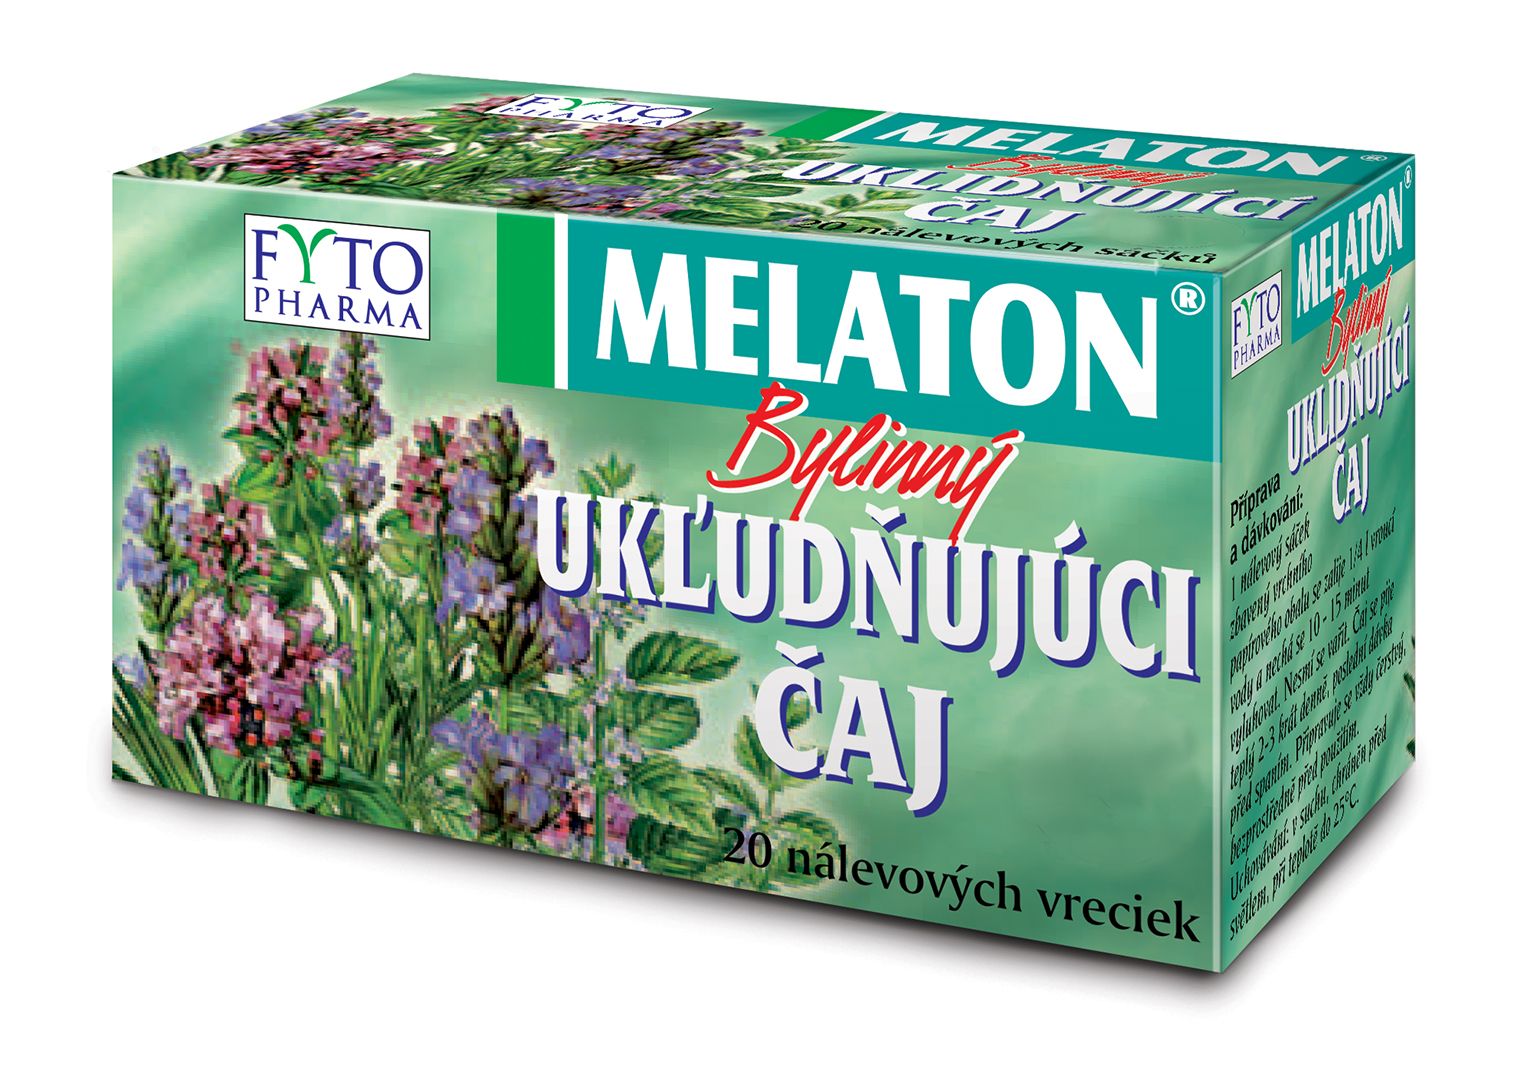 Fytopharma MELATON bylinný uklidňující čaj 20x1